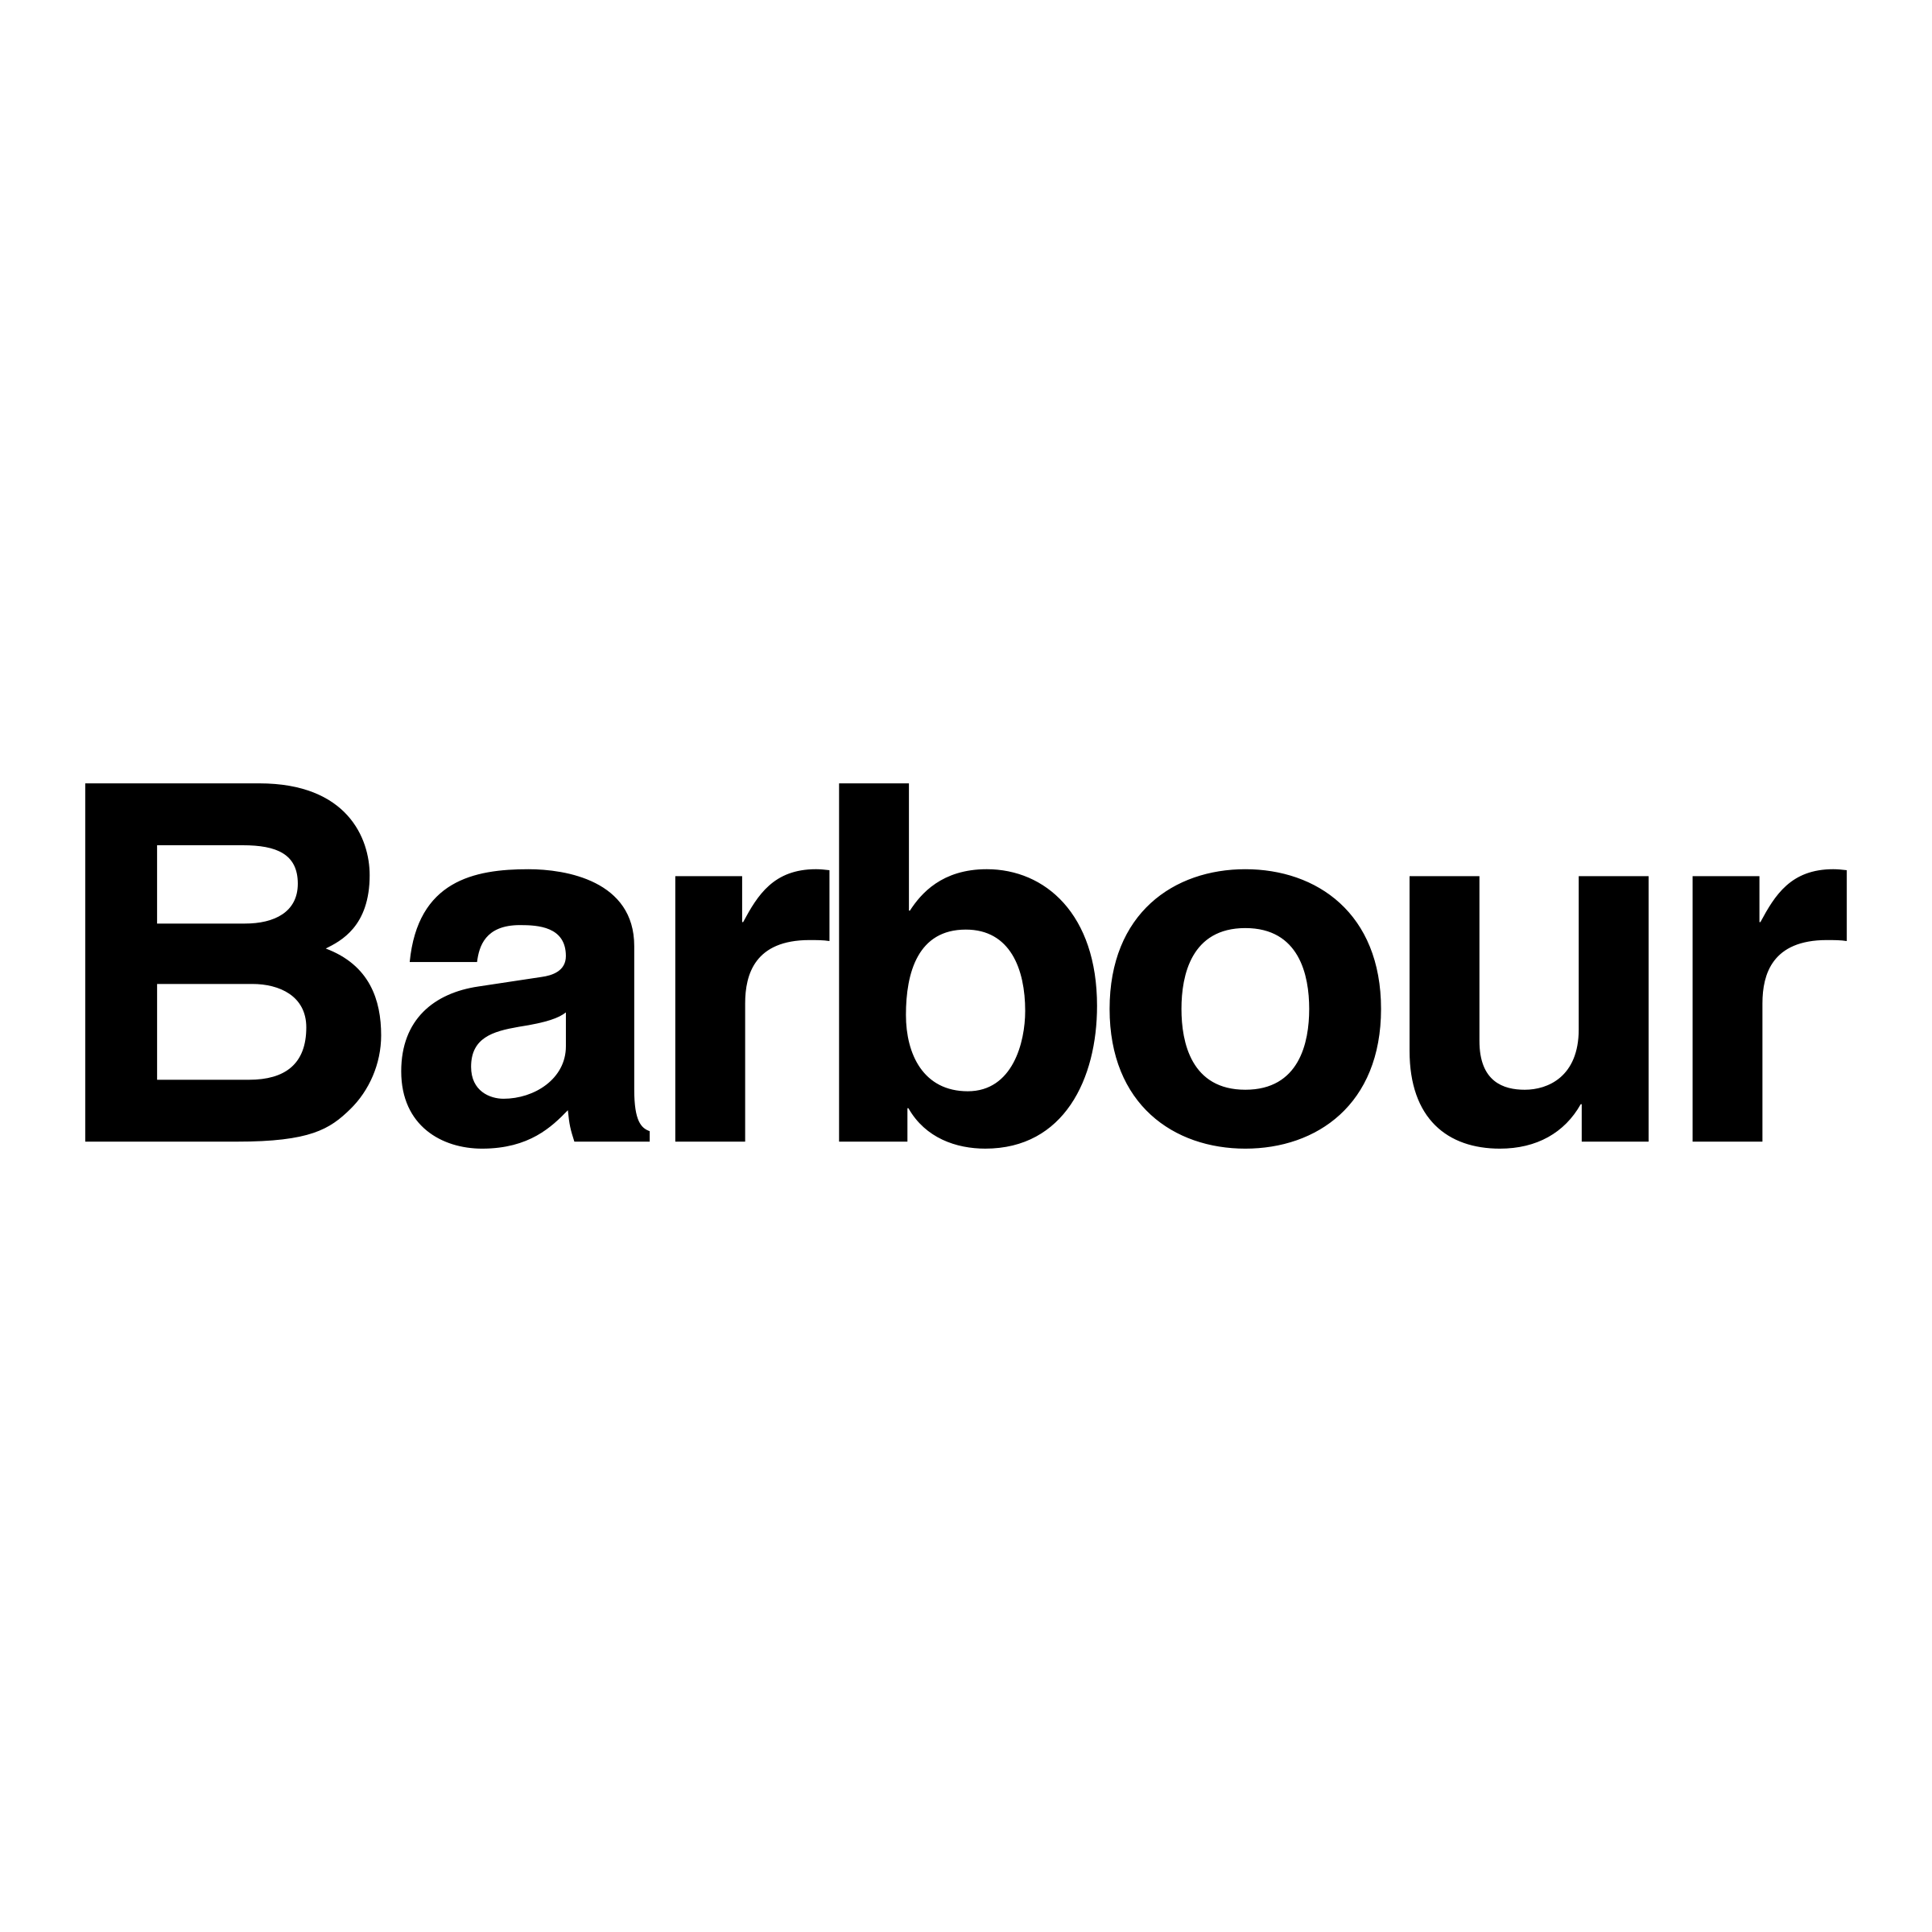 Barbour Logo - Barbour 01 Logo PNG Transparent & SVG Vector - Freebie Supply